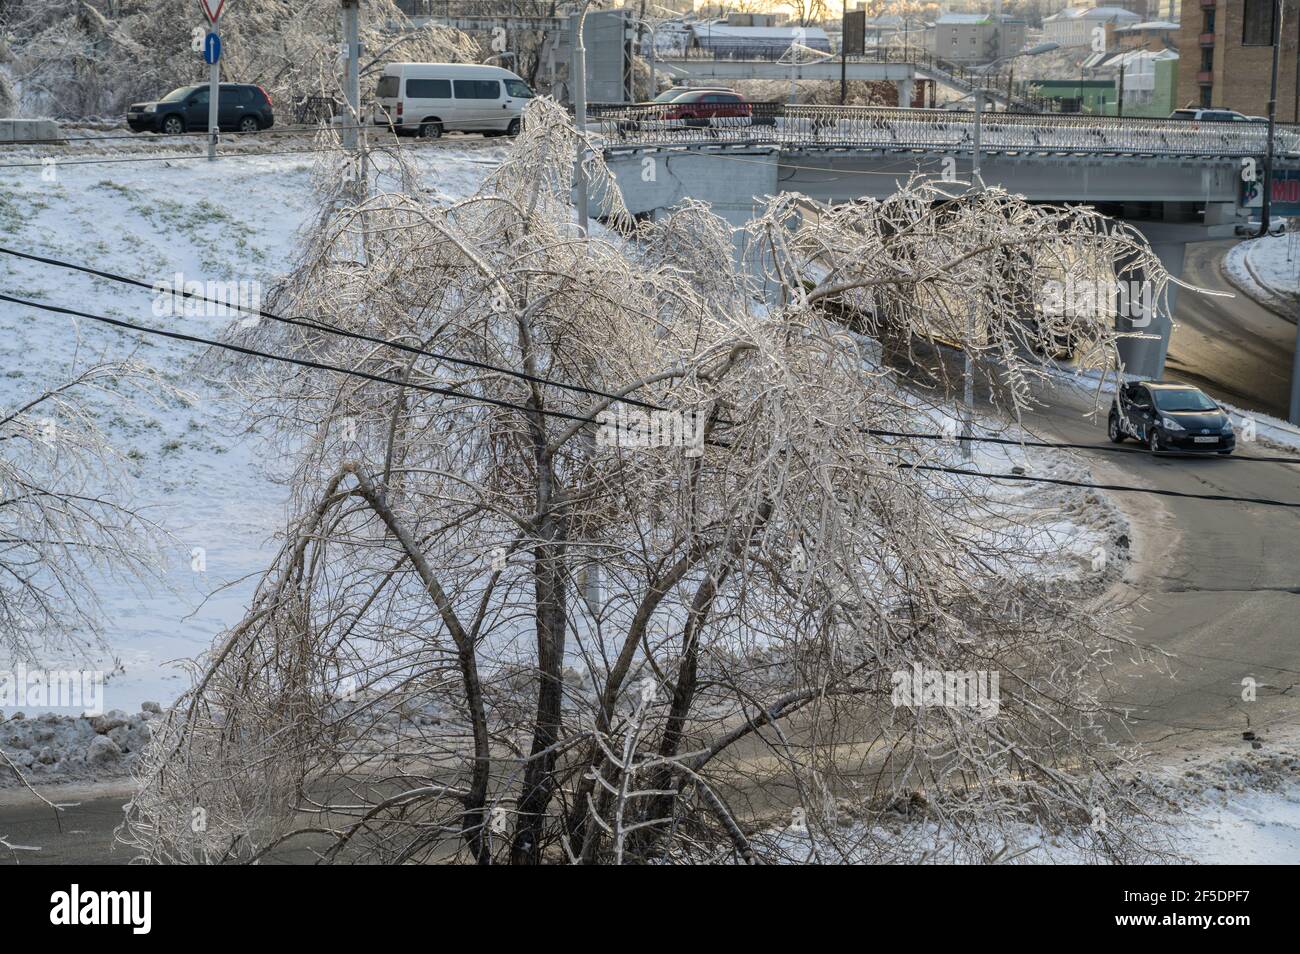 WLADIWOSTOK, RUSSLAND - 23. NOVEMBER 2020: Die Bäume sind nach eisigen Regenfällen mit einer Eiskruste bedeckt. Naturkatastrophe. Stockfoto